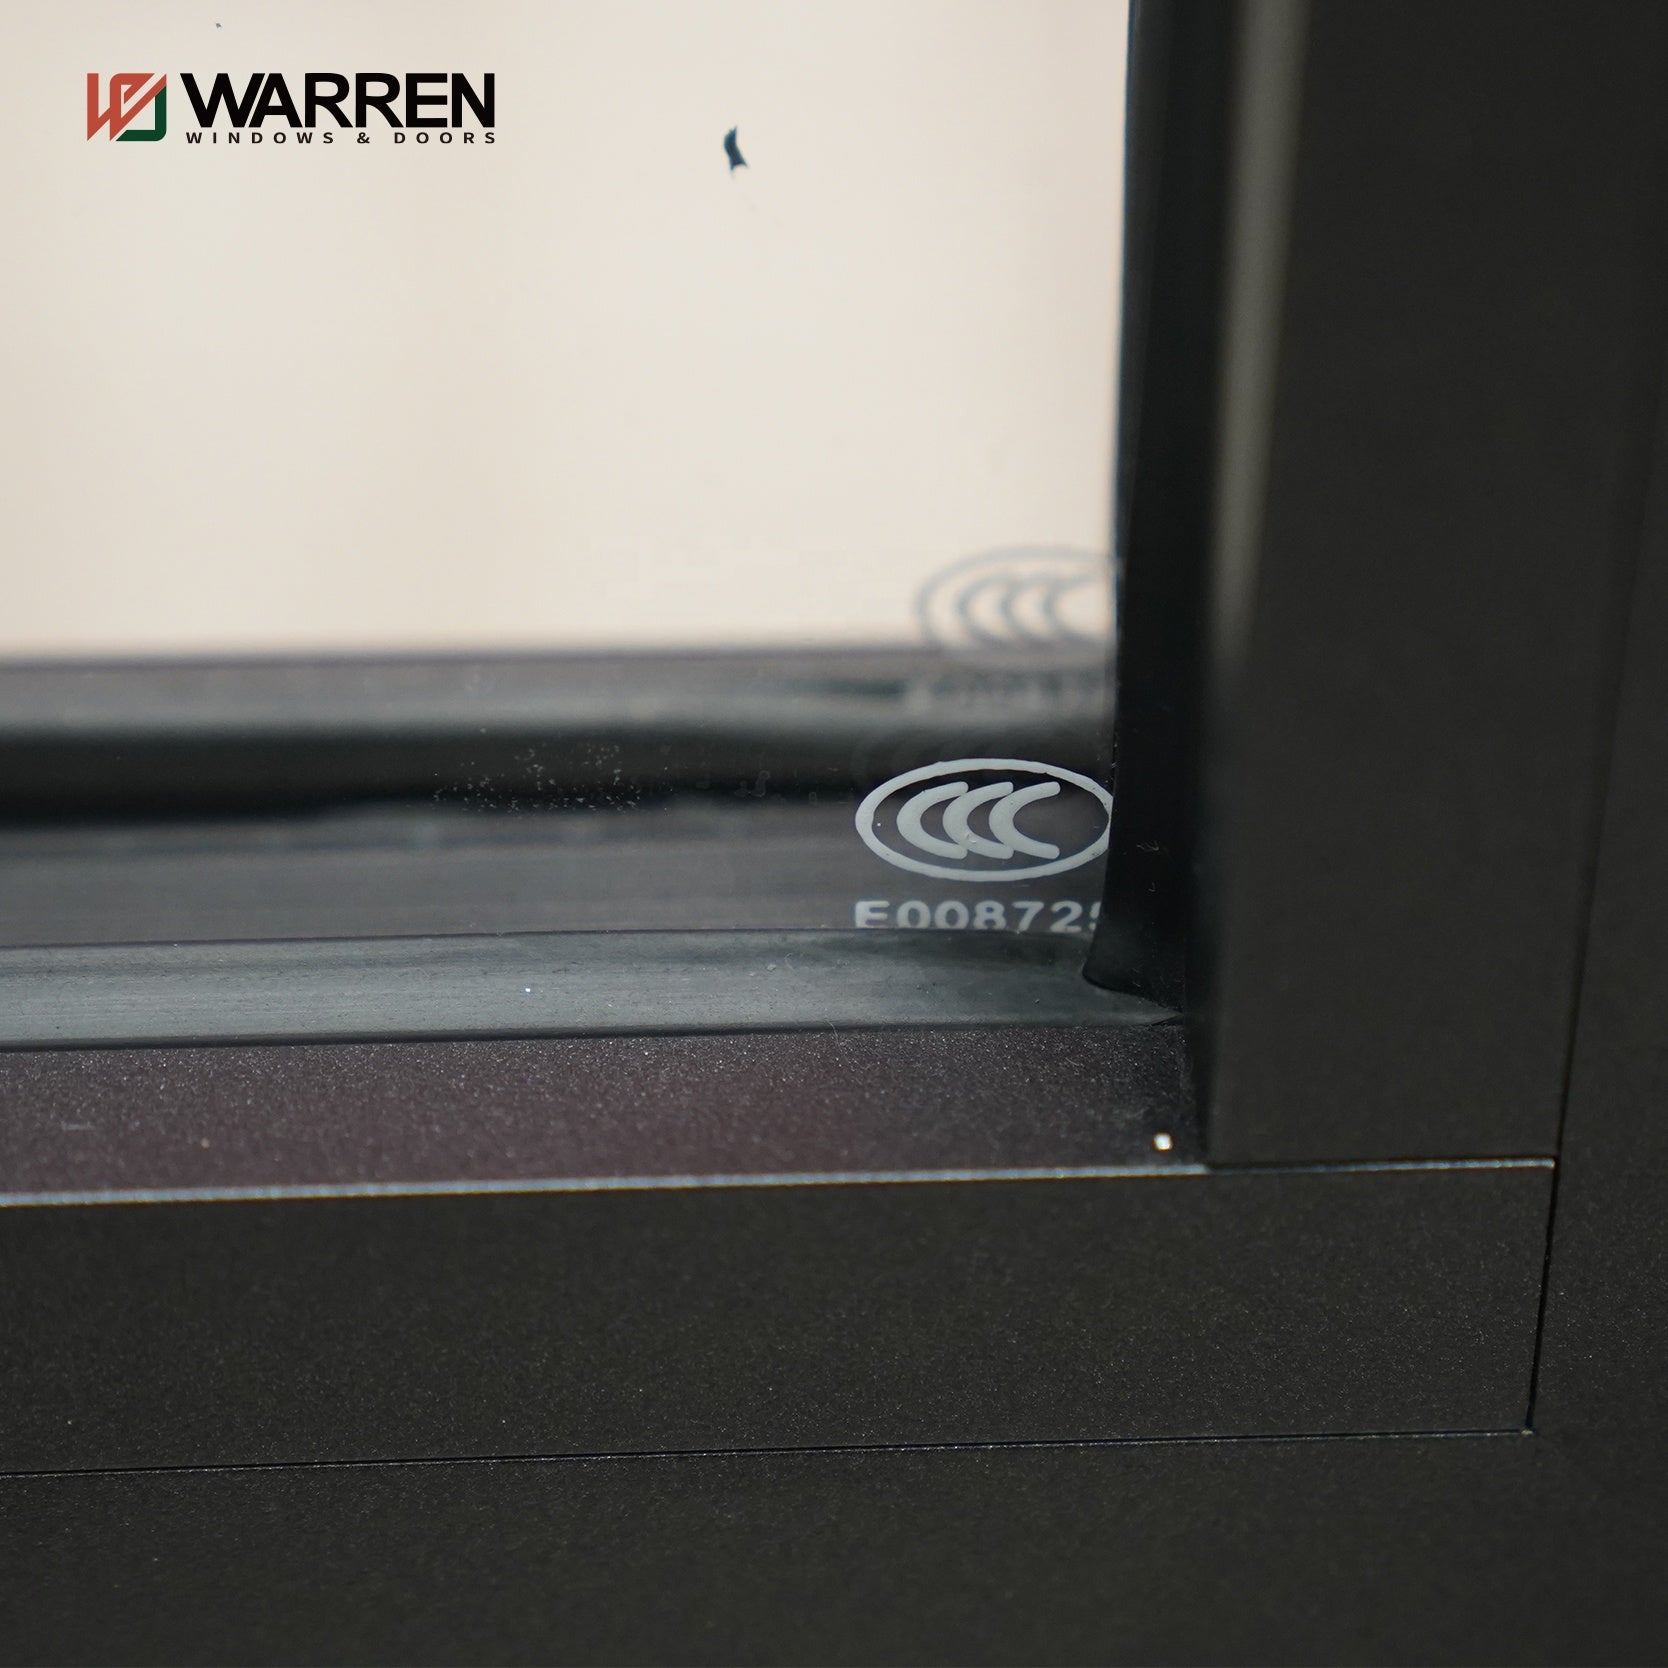 Warren Factory price doors exterior thermal break heavy duty aluminium glass sliding doors and windows designs